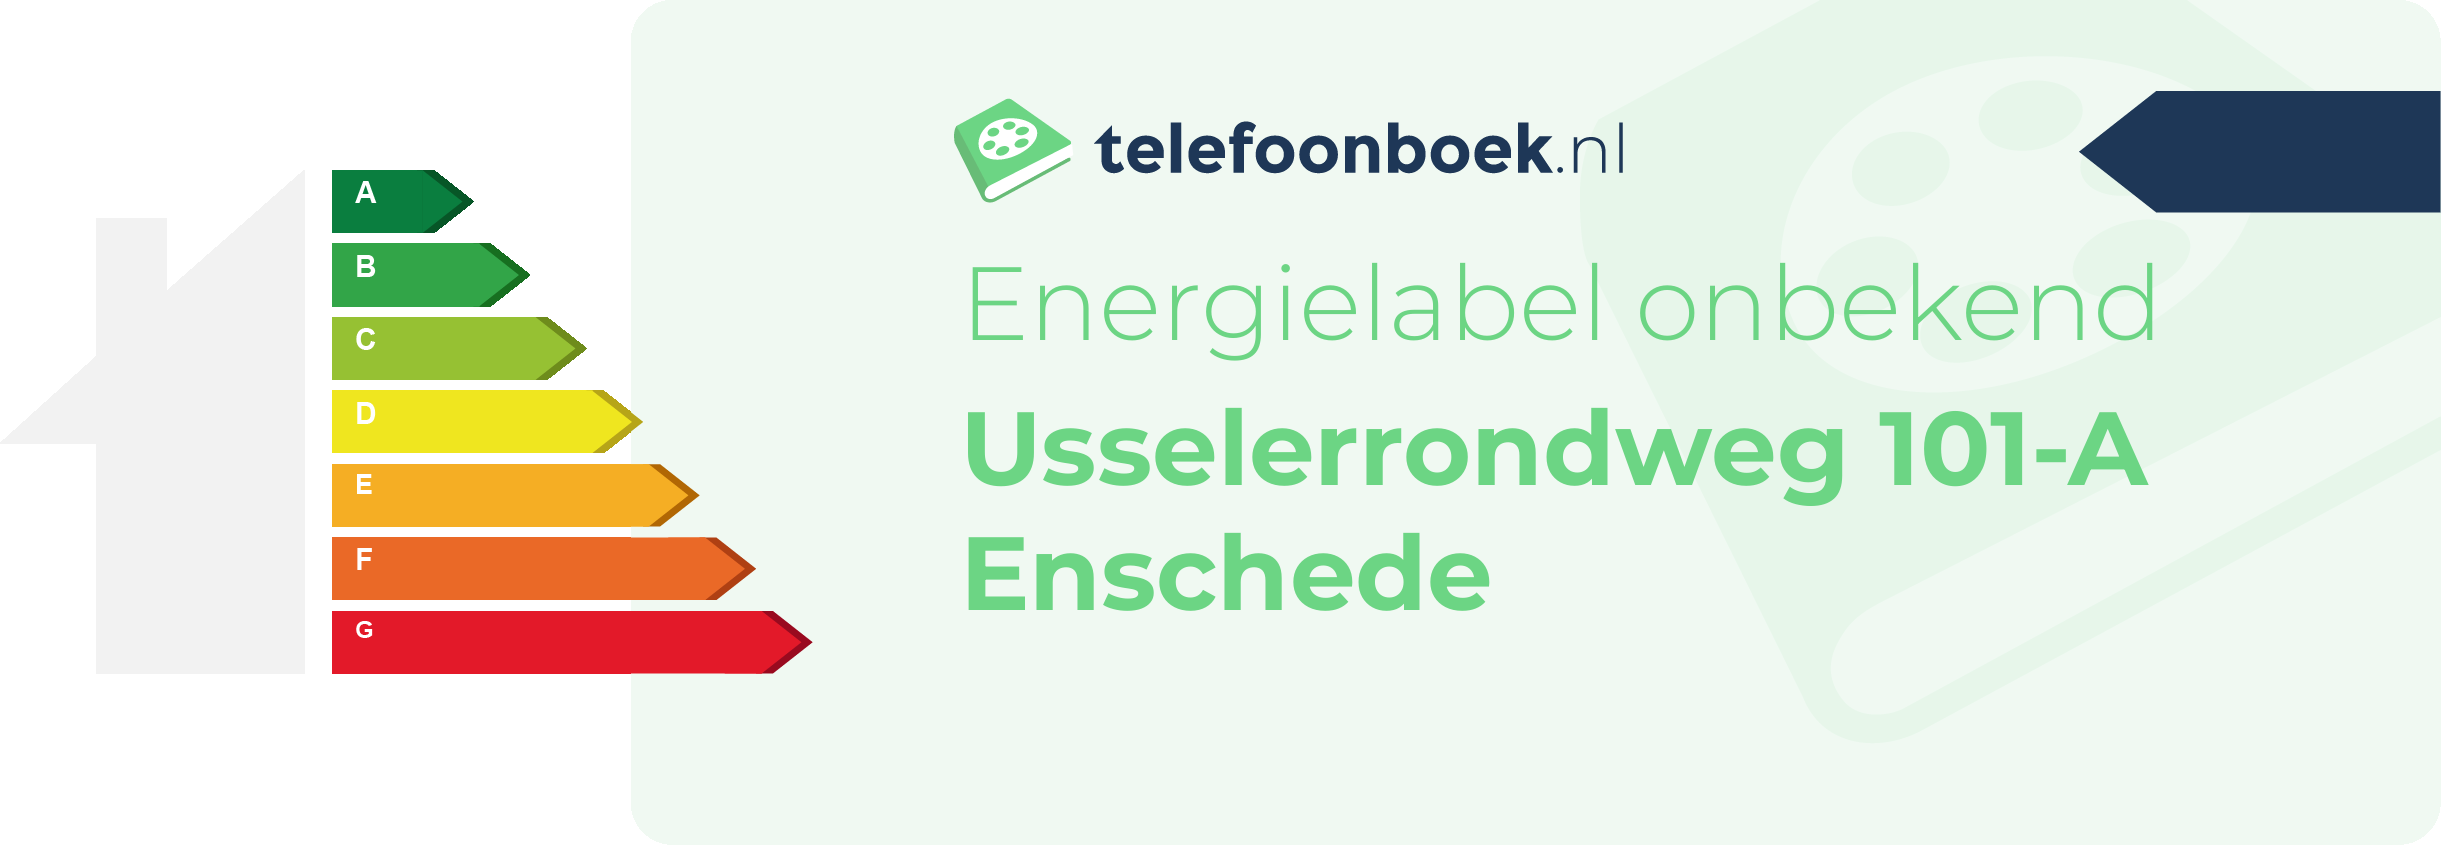 Energielabel Usselerrondweg 101-A Enschede